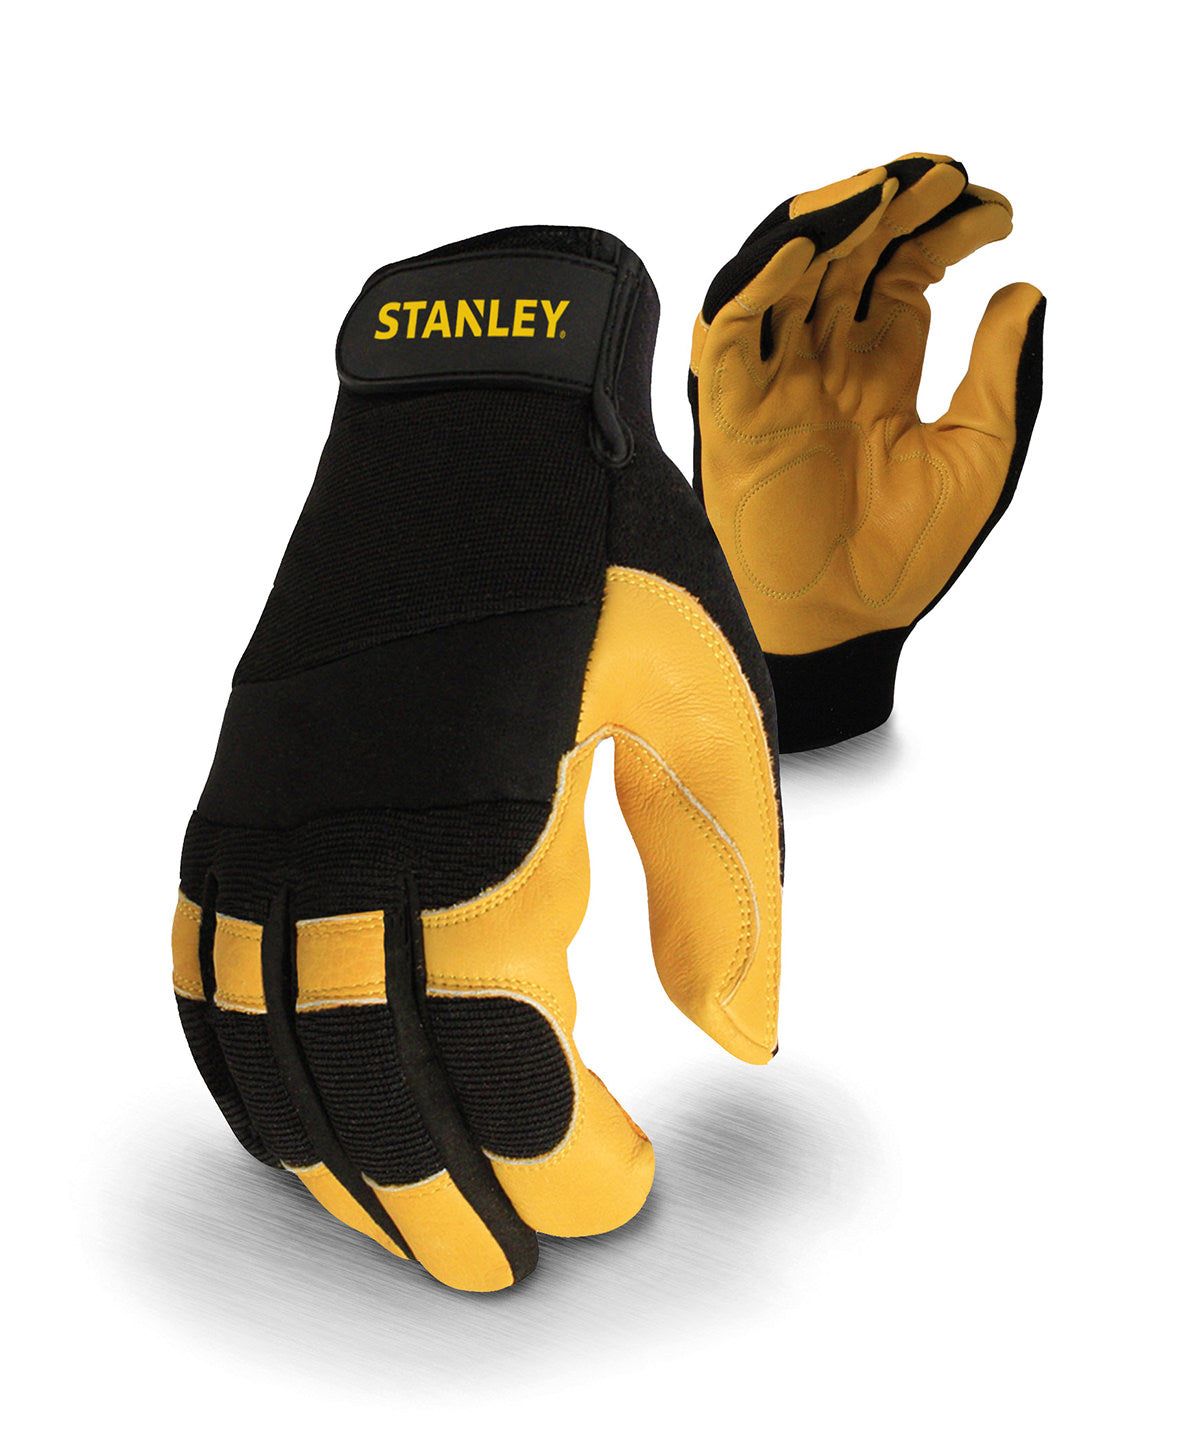 Stanley Performance-Leder-Hybrid-Handschuhe